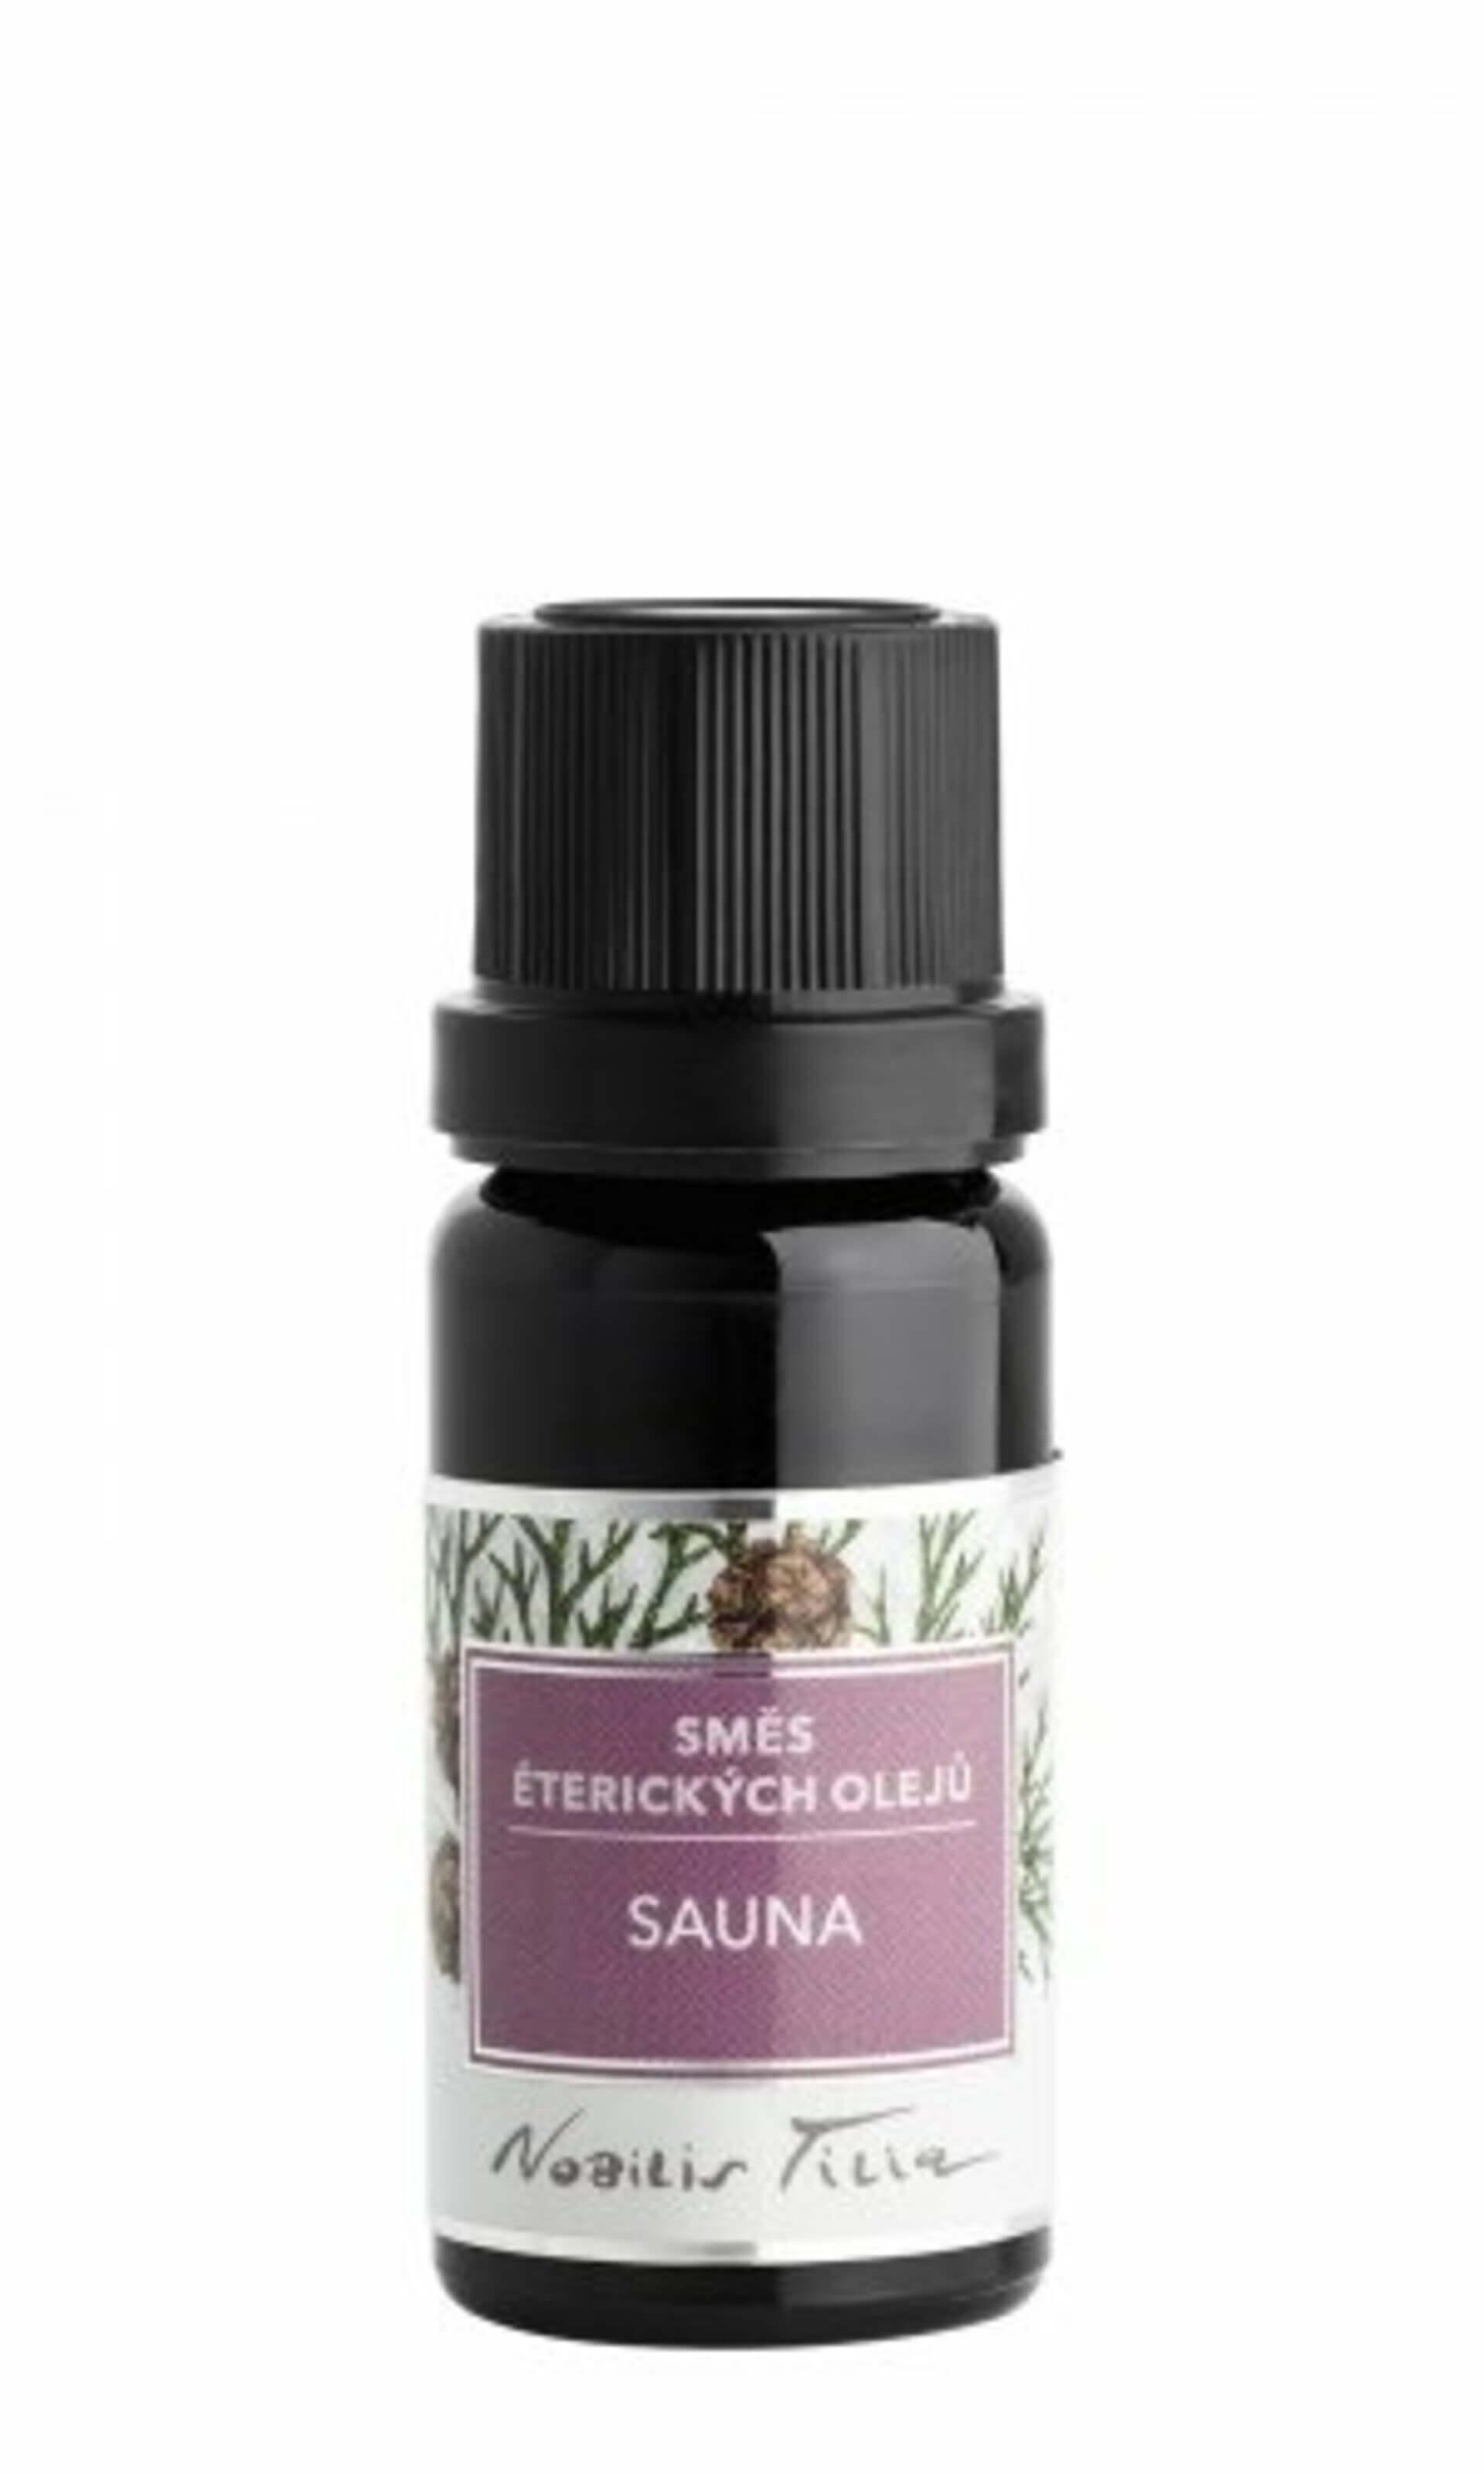 Nobilis Tilia Směs éterických olejů Sauna 10 ml